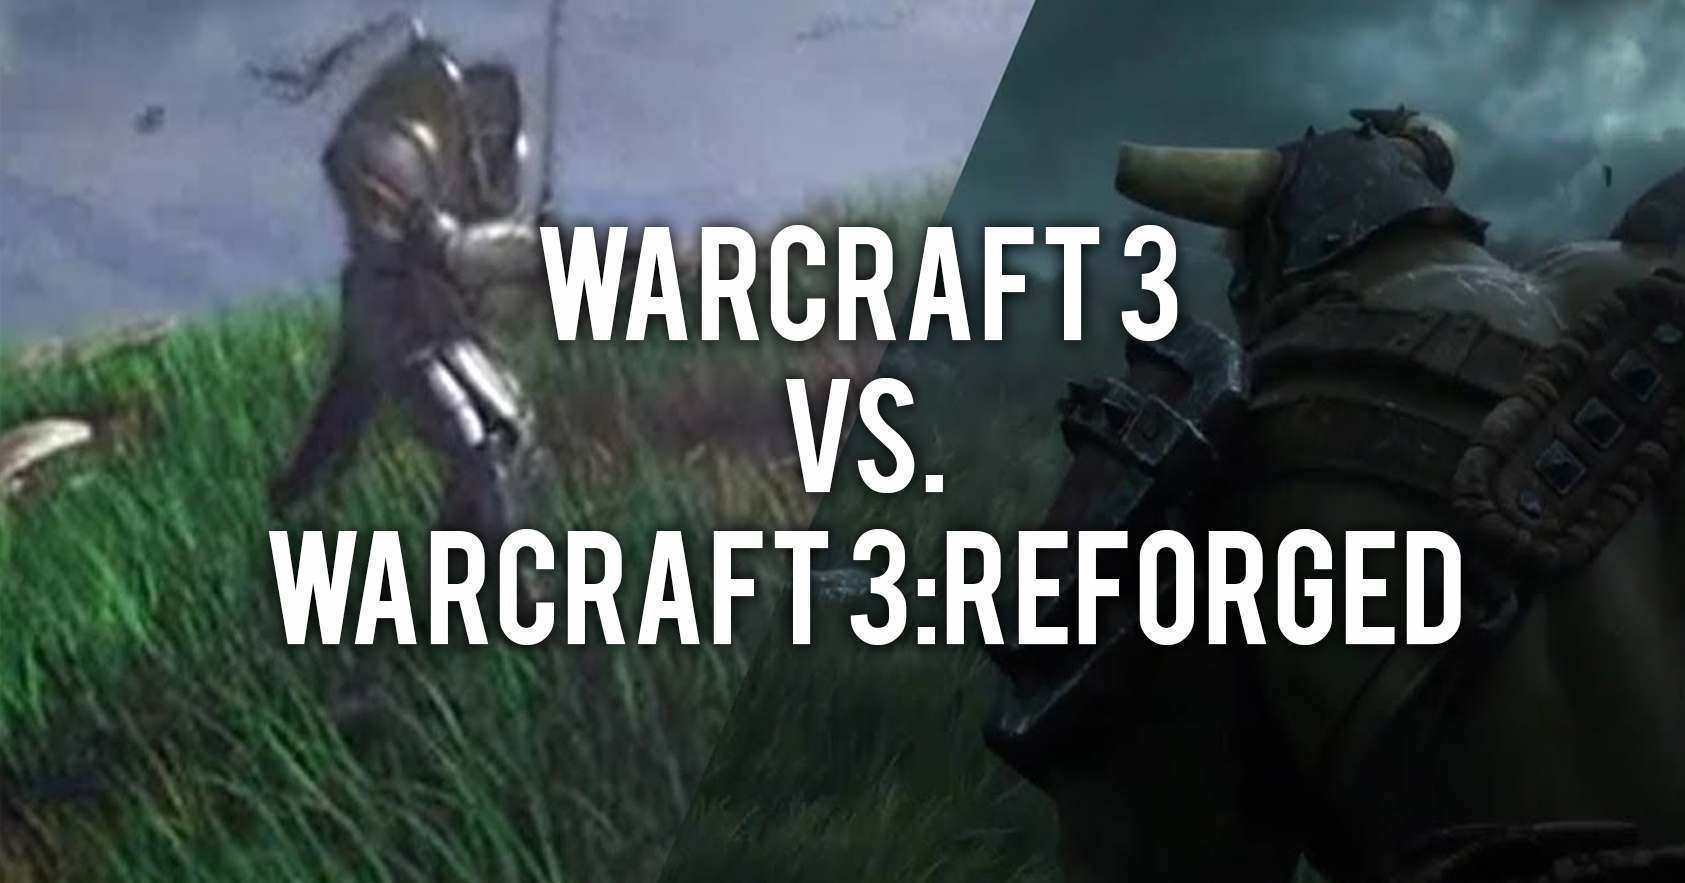 Warcraft 3 Reforged vs. Warcraft 3 Trailer GegenÃ¼berstellung 